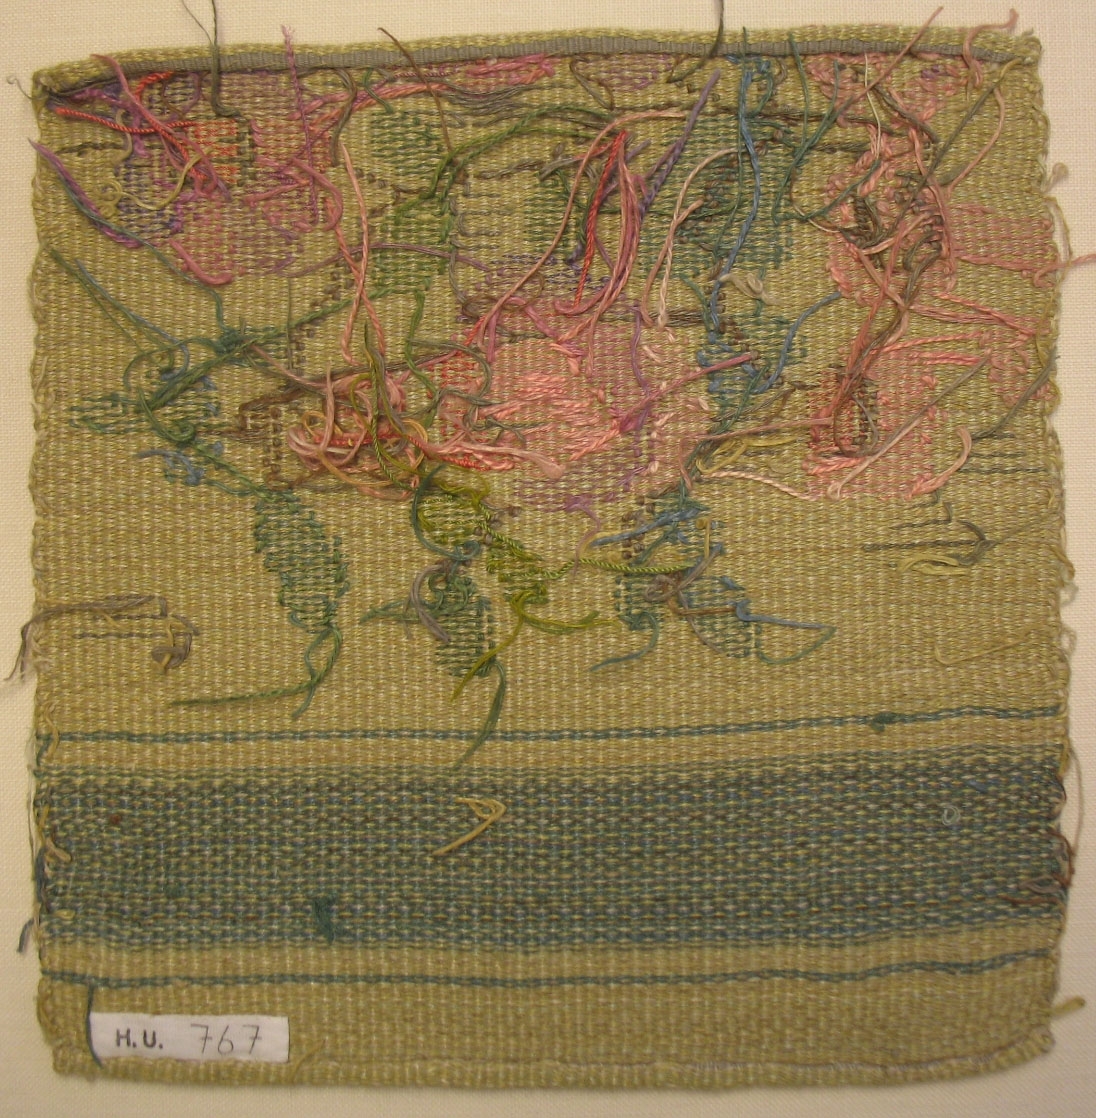 Tidigare katalogisering enl uppgift av Elisabeth Thorman kompletterad 1958 av Elisabeth Stawenow:

Möbelklädsel, prov, 24 x 23 cm. H.V.-teknik. Varp av vitt bomullsgarn. Väft av lingarn. Botten melerad i ljusgult och ljusgrönt. Grön rand och inplockat mönster en rosenbukett i rosa, grönt och brunt.
Thyra Grafströms ateljé, Nr 142 b.